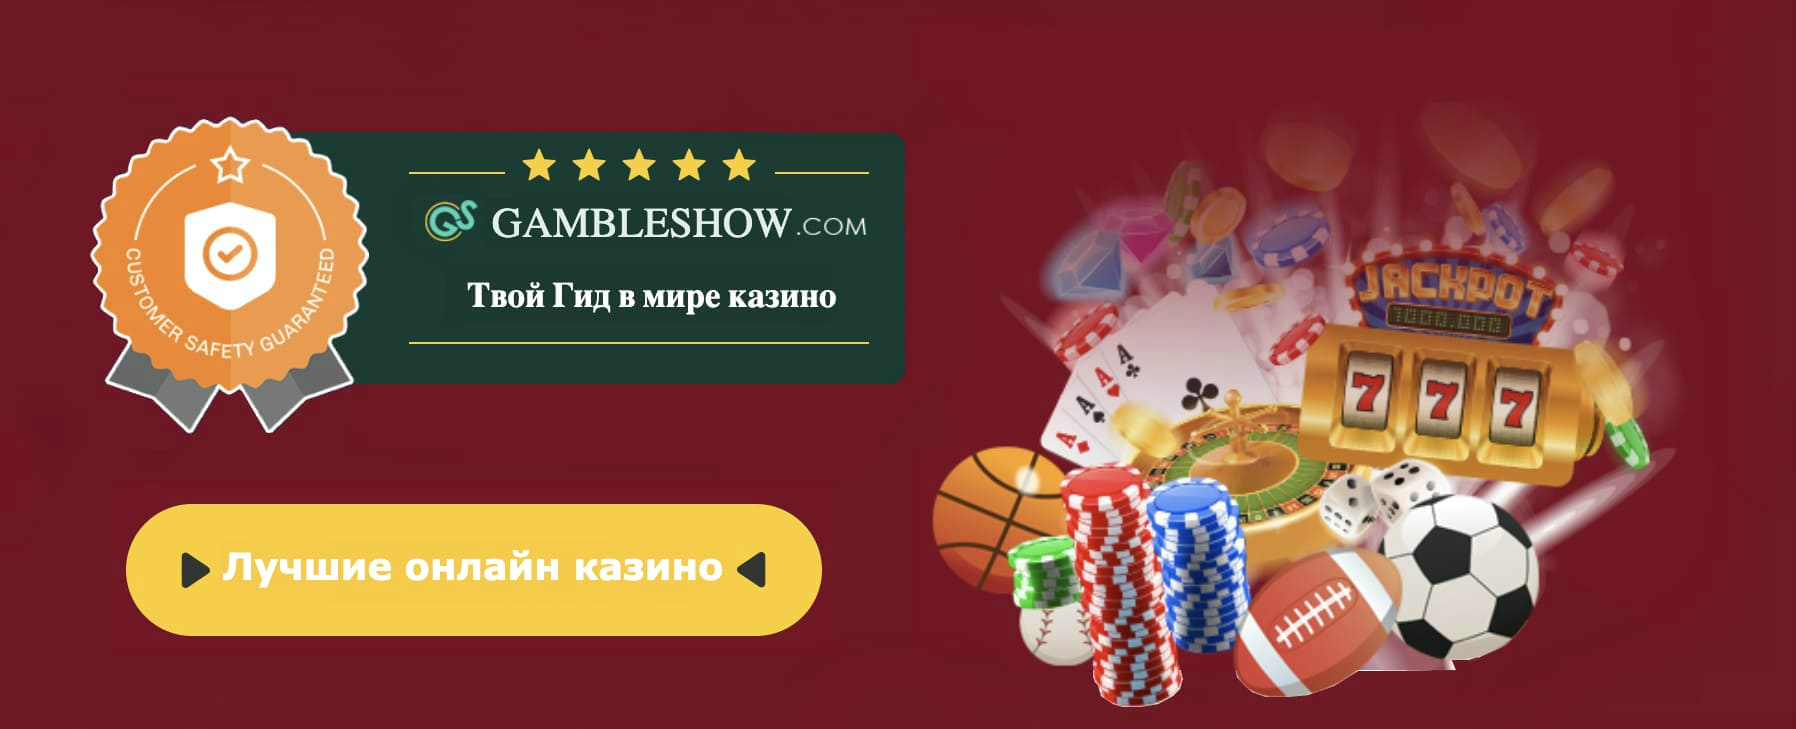 Казино вулкан старс бездепозитный бонус 10000 рублей покердом личный кабинет pokerdomru official 1 win